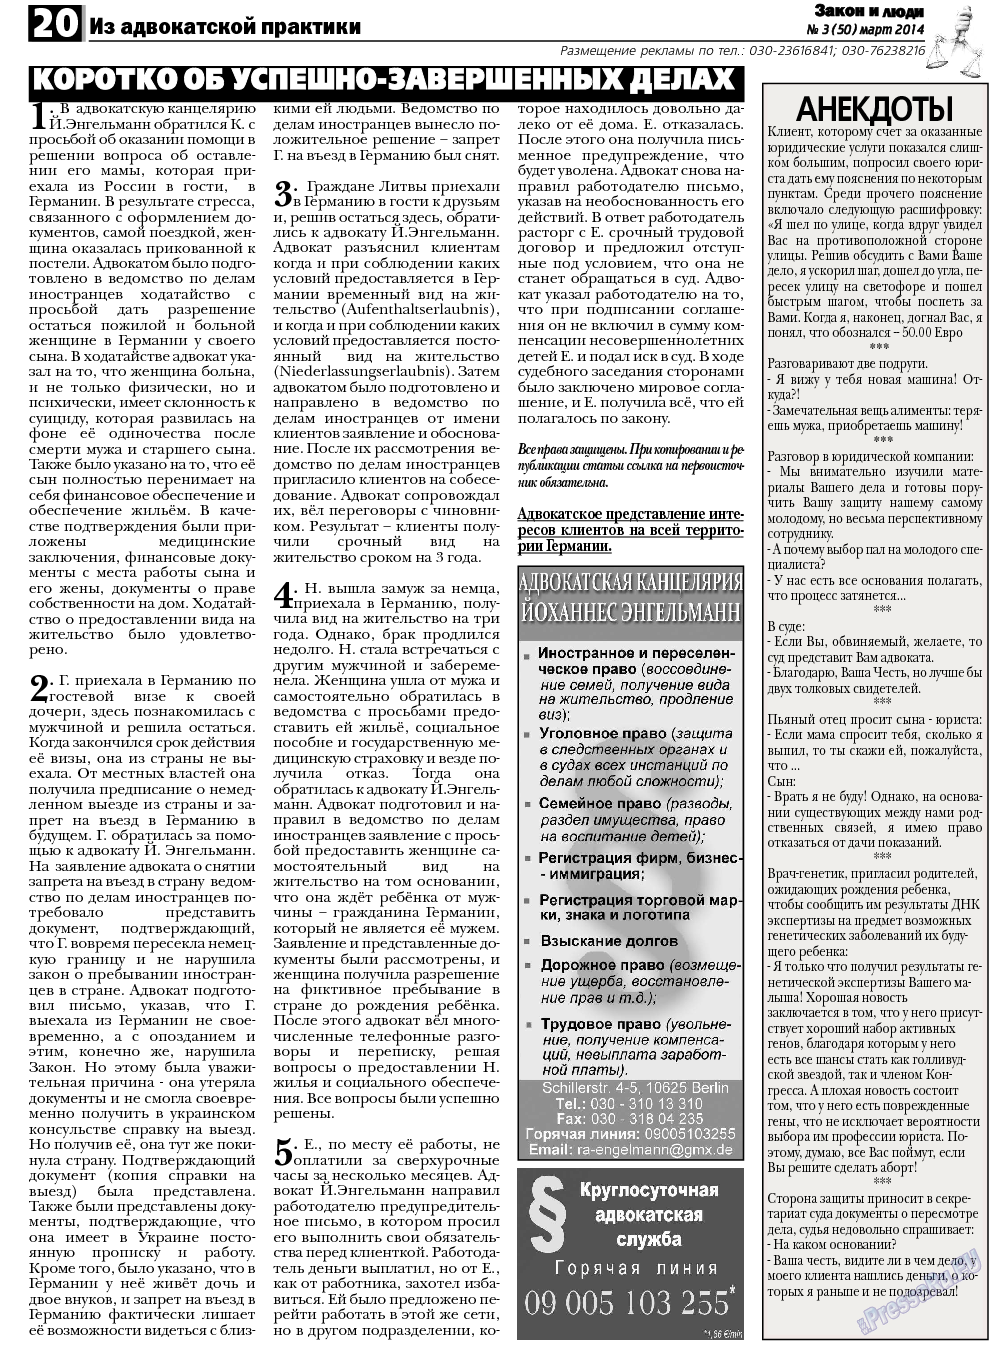 Закон и люди, газета. 2014 №3 стр.20